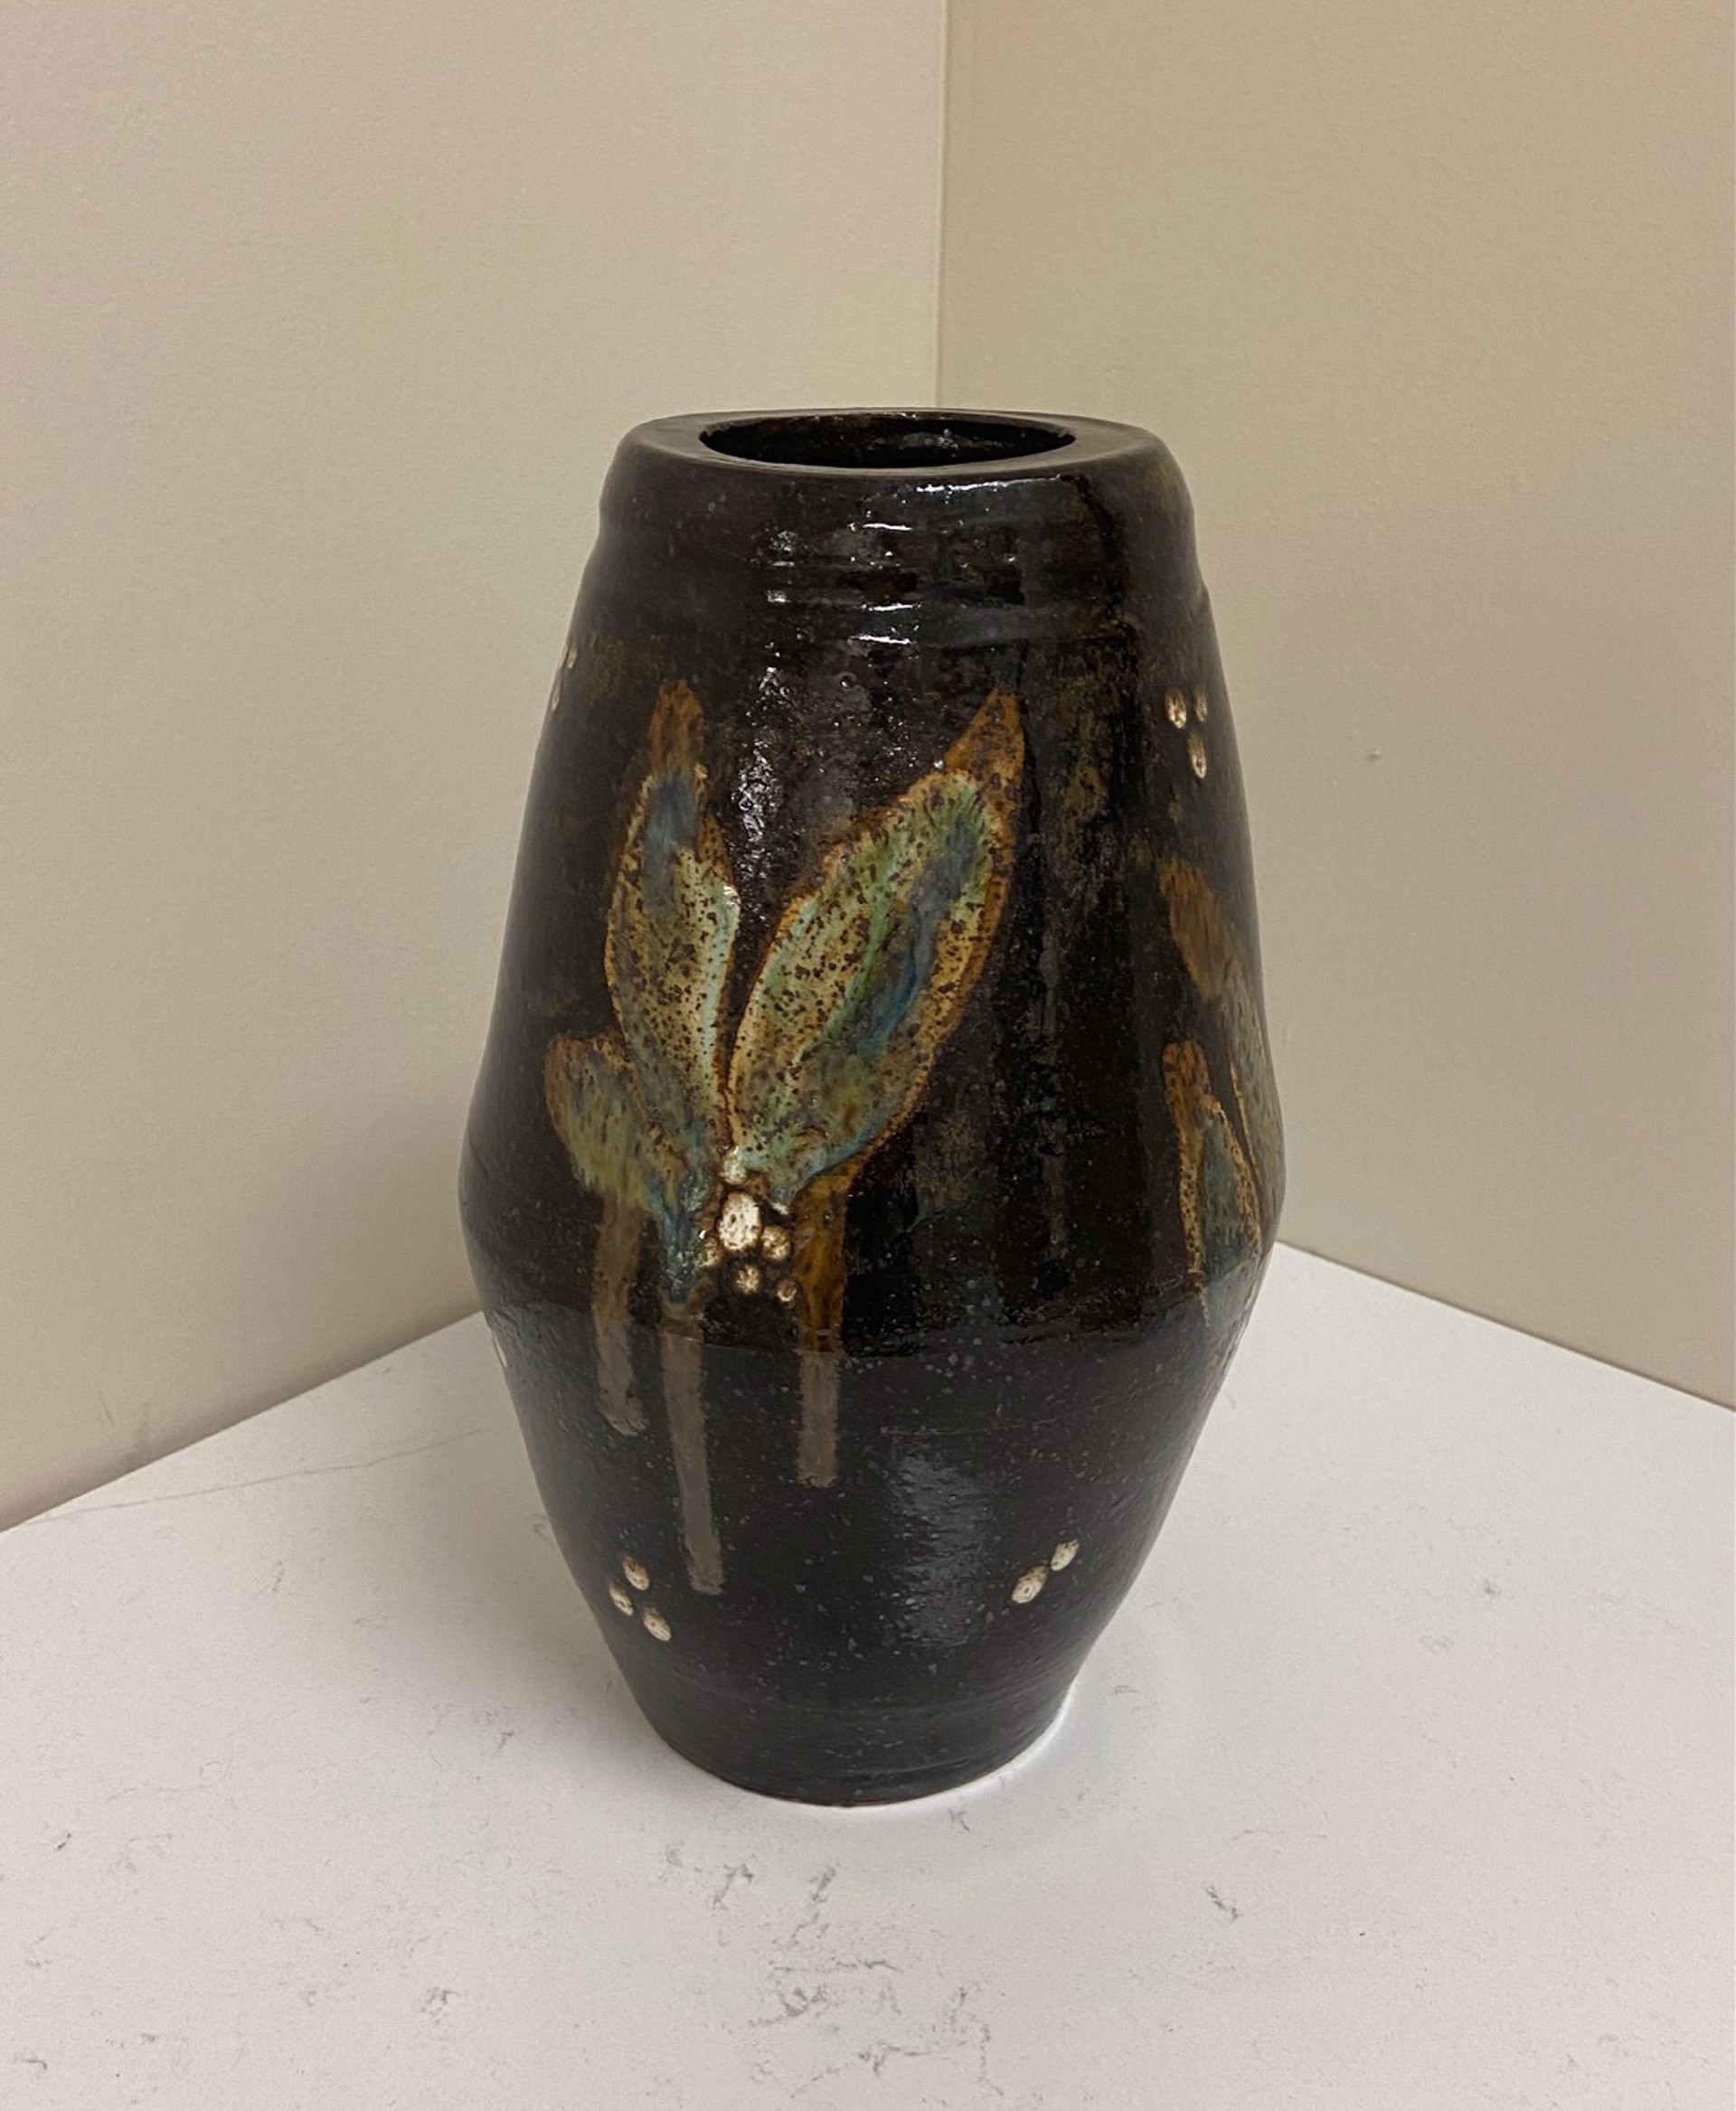 Cosmic Leaf Vase by Frankie Williams